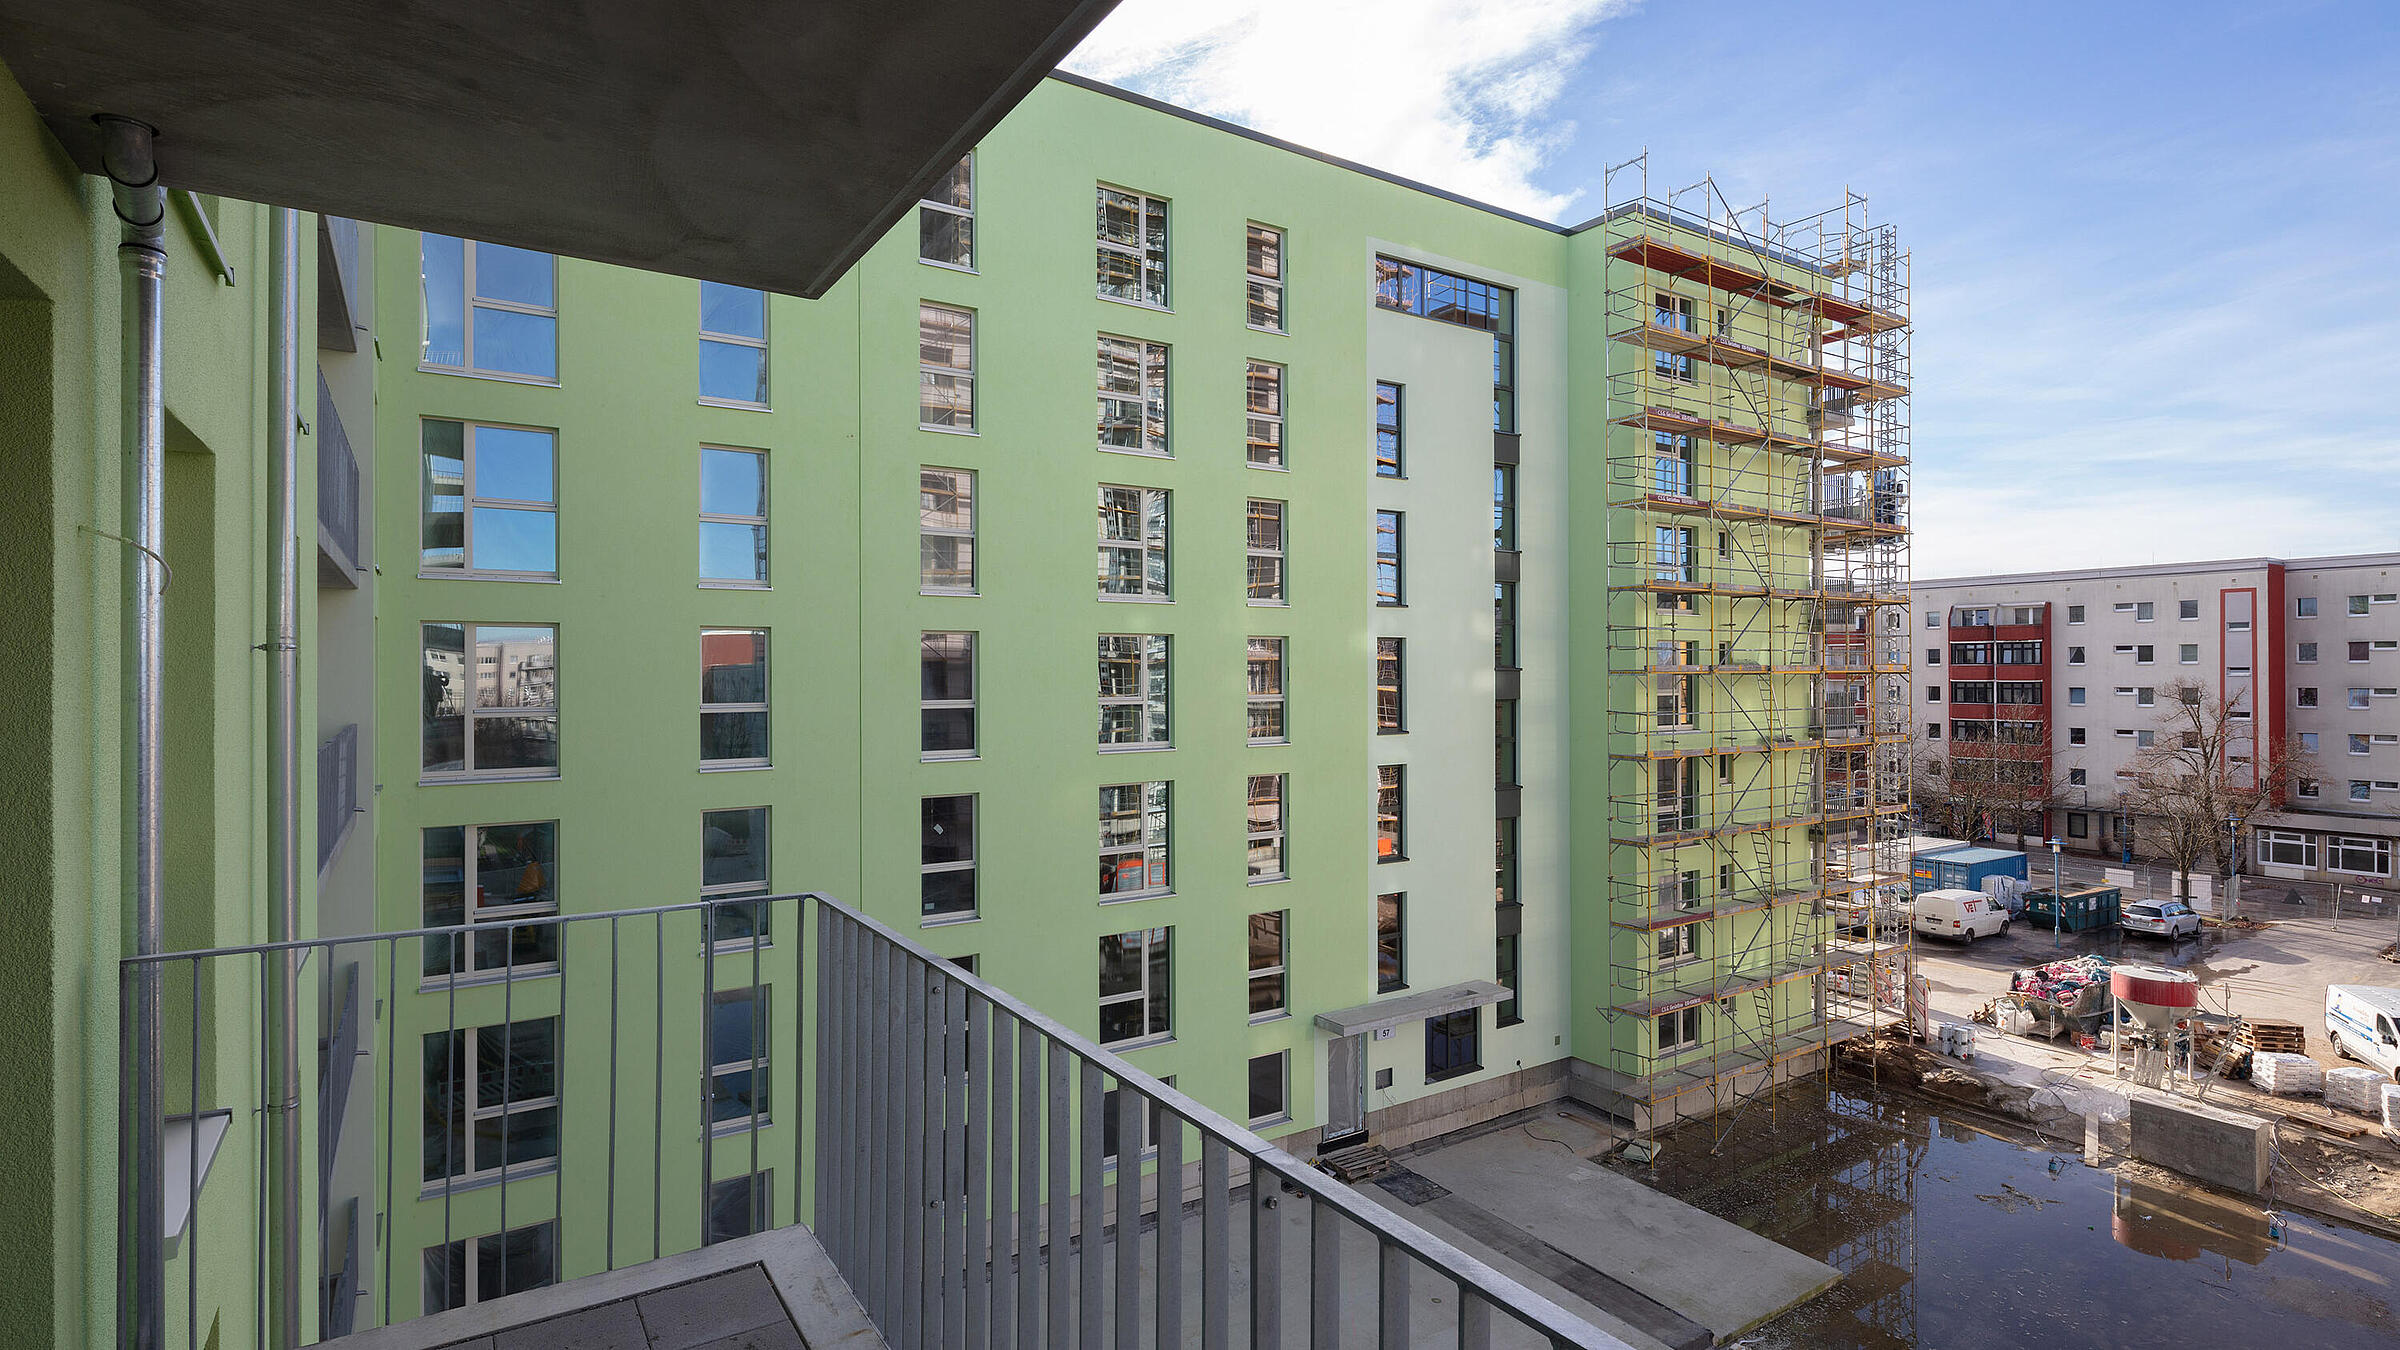 Neubau Stollberger Straße: Blick vom Balkon auf angrenzendes mehrstöckiges Gebäude